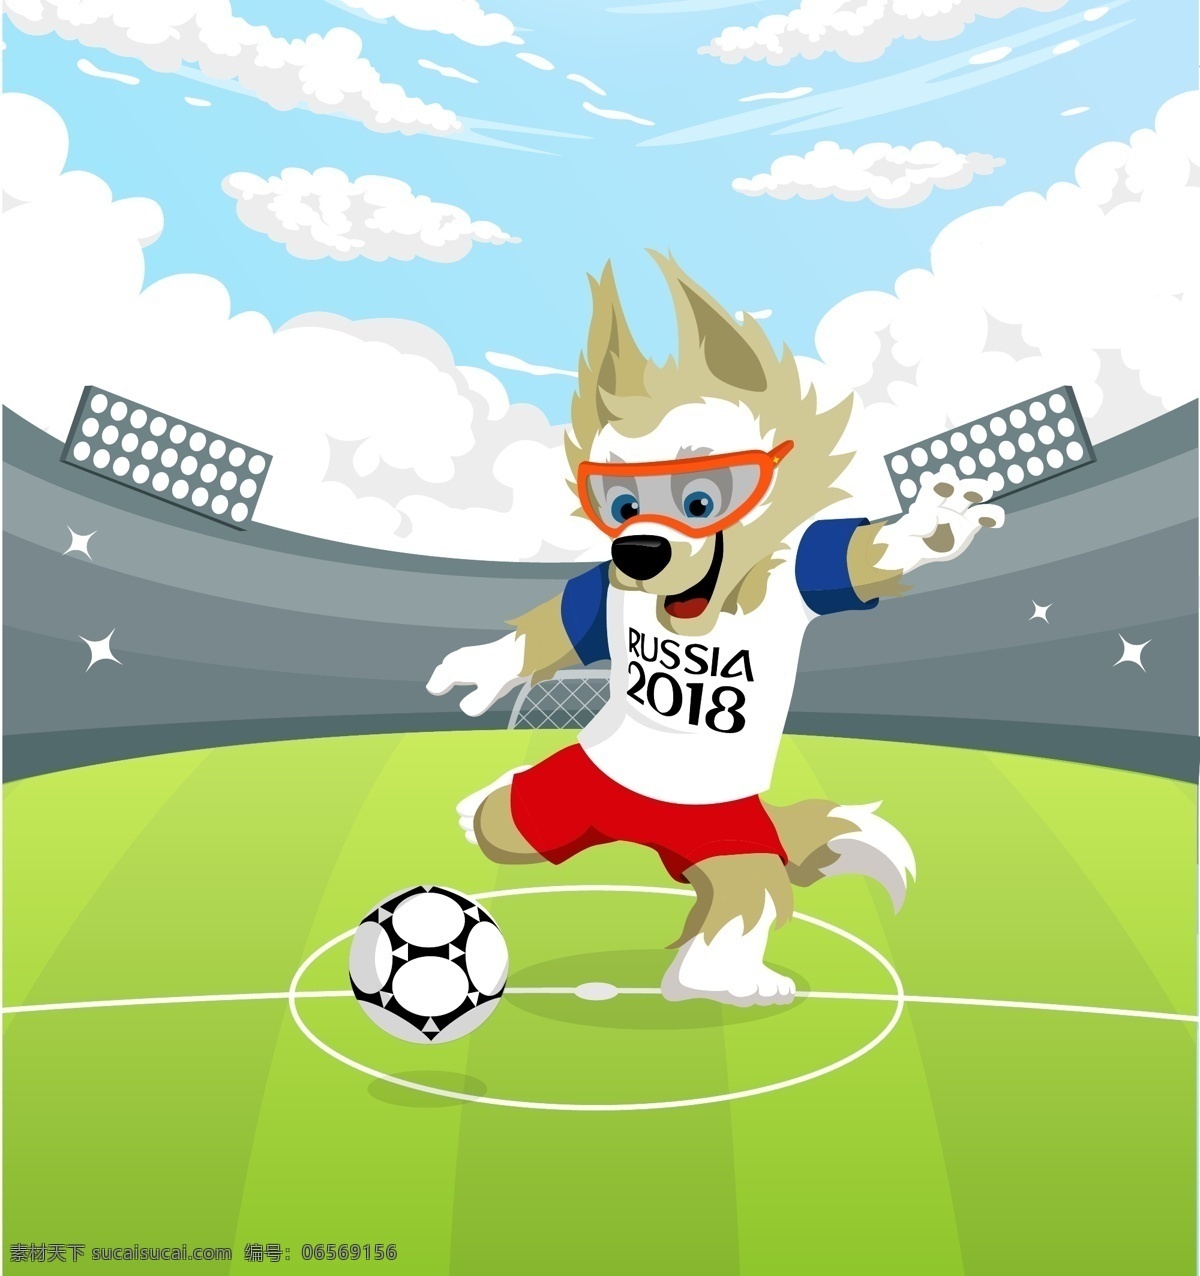 2018 世界杯 吉祥物 西伯利亚 平原狼 足球 俄罗斯 狼 足球场 天空 草坪 扁平 平面素材 卡通设计